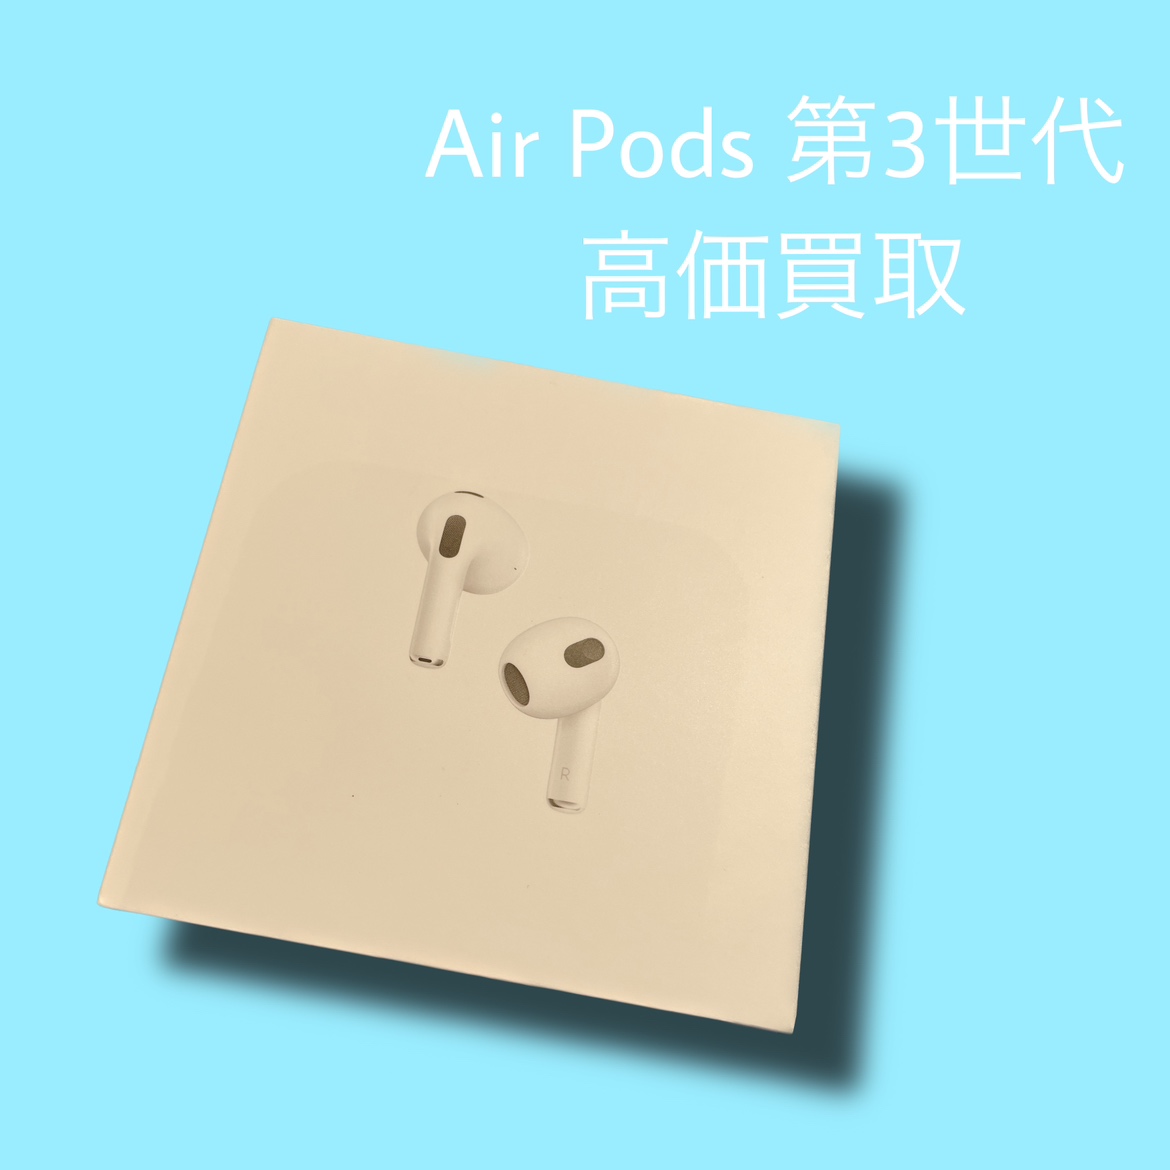 AirPods 第3世代 新品未開封品【天神地下街店】